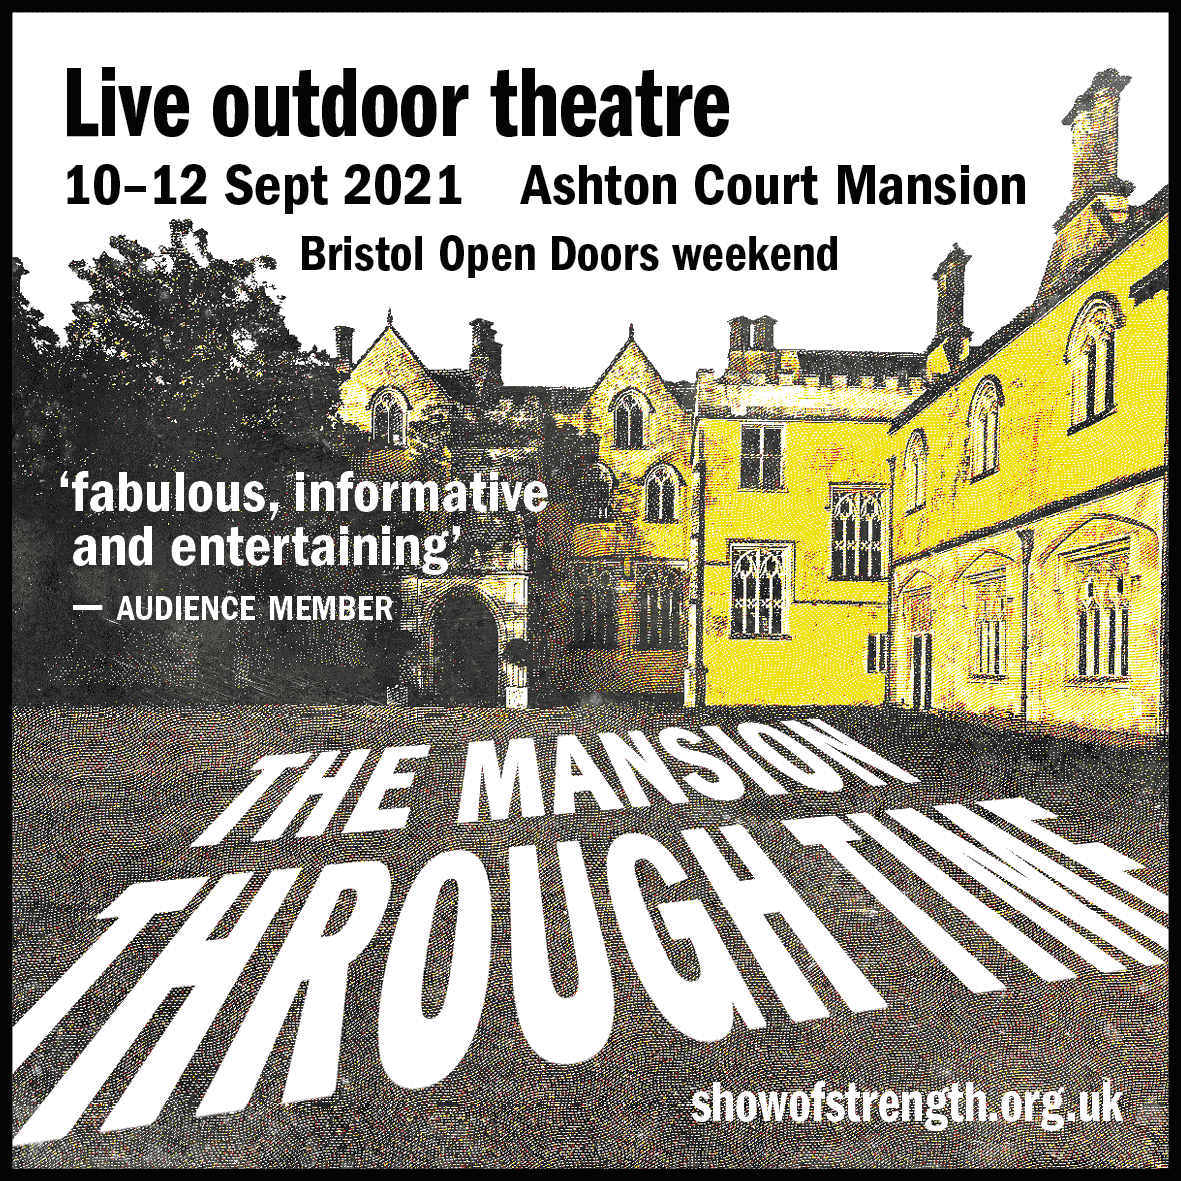 The Mansion Through Time, Ashton Court, 10-12 Sept 2021